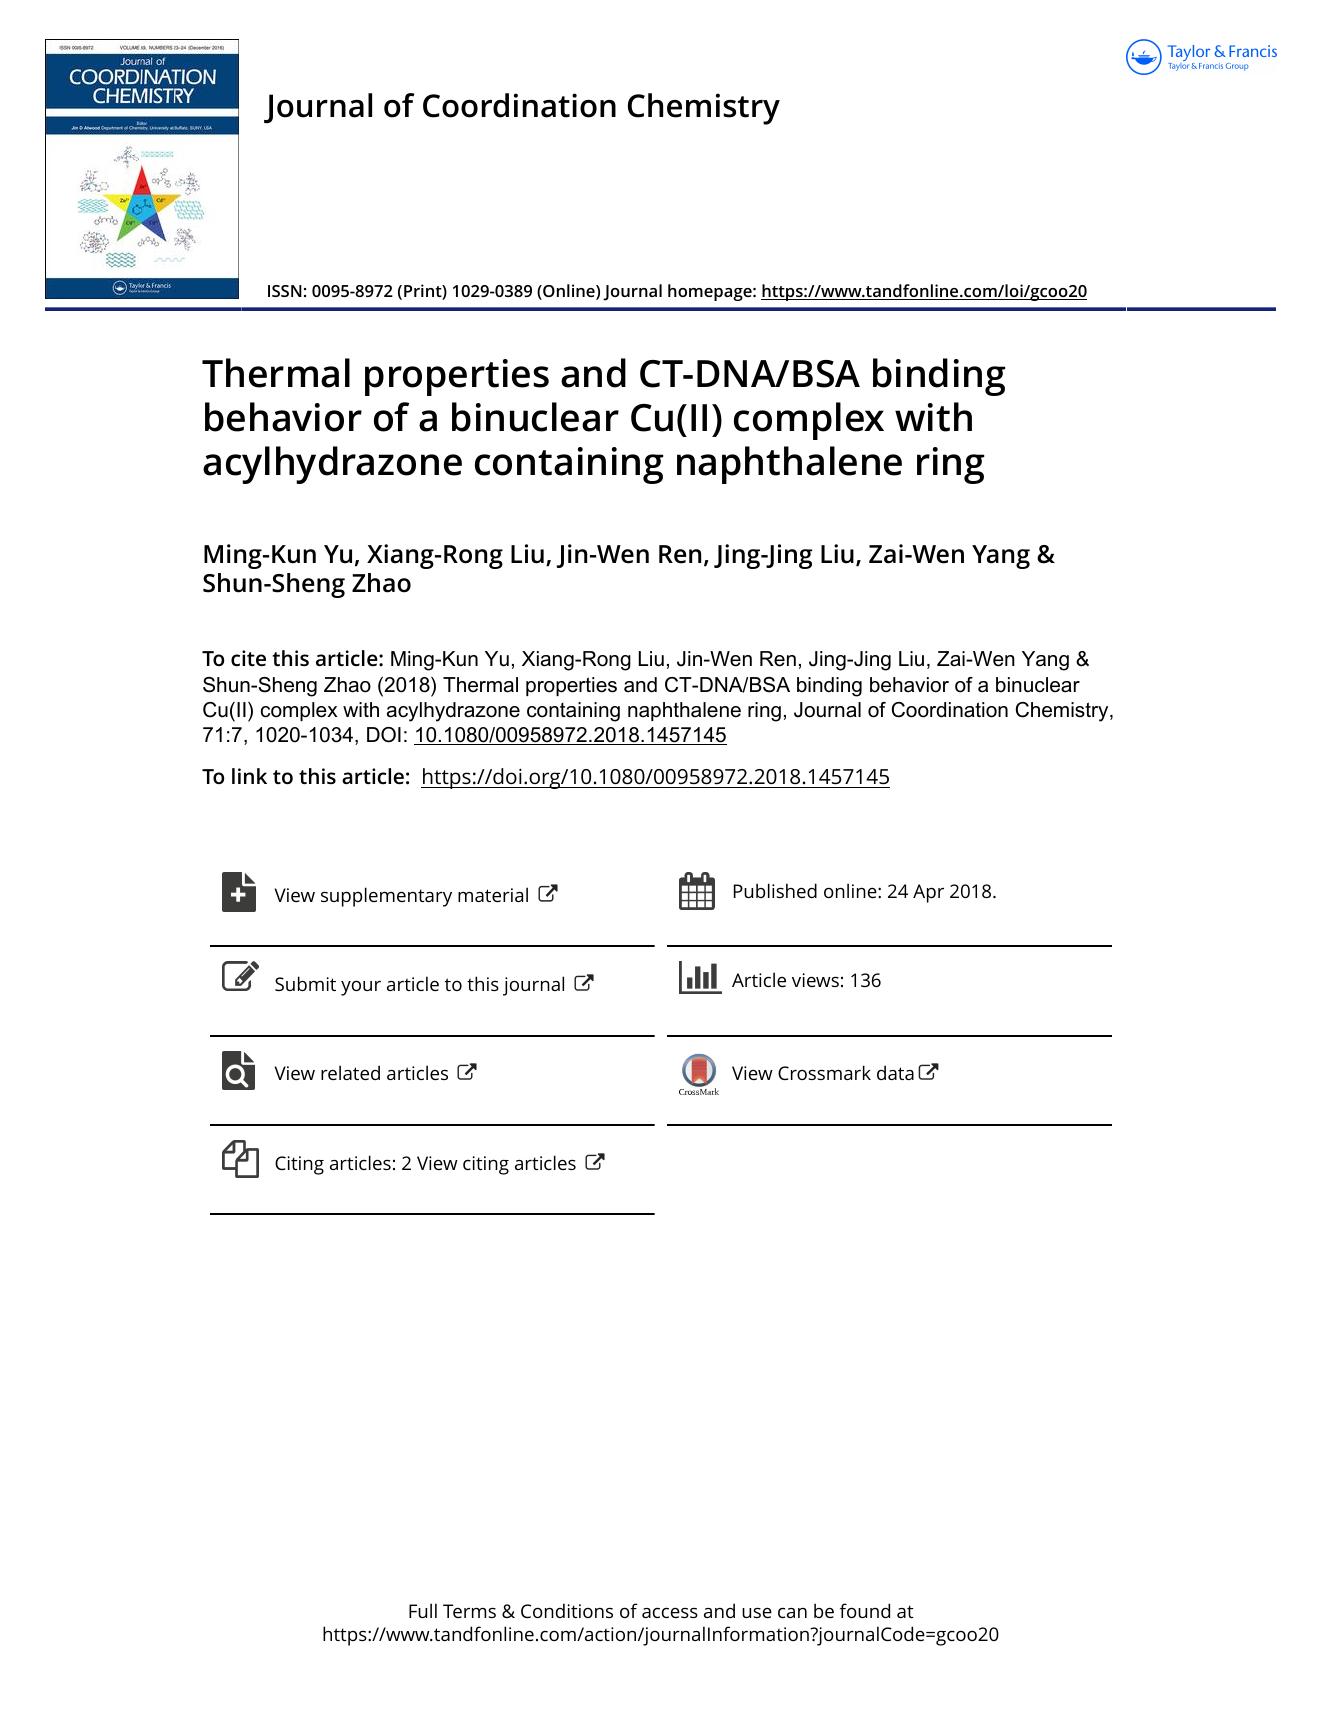 Thermal properties and CT-DNABSA binding behavior of a binuclear Cu(II) complex with acylhydrazone containing naphthalene ring by Ming-Kun Yu & Xiang-Rong Liu & Jin-Wen Ren & Jing-Jing Liu & Zai-Wen Yang & Shun-Sheng Zhao